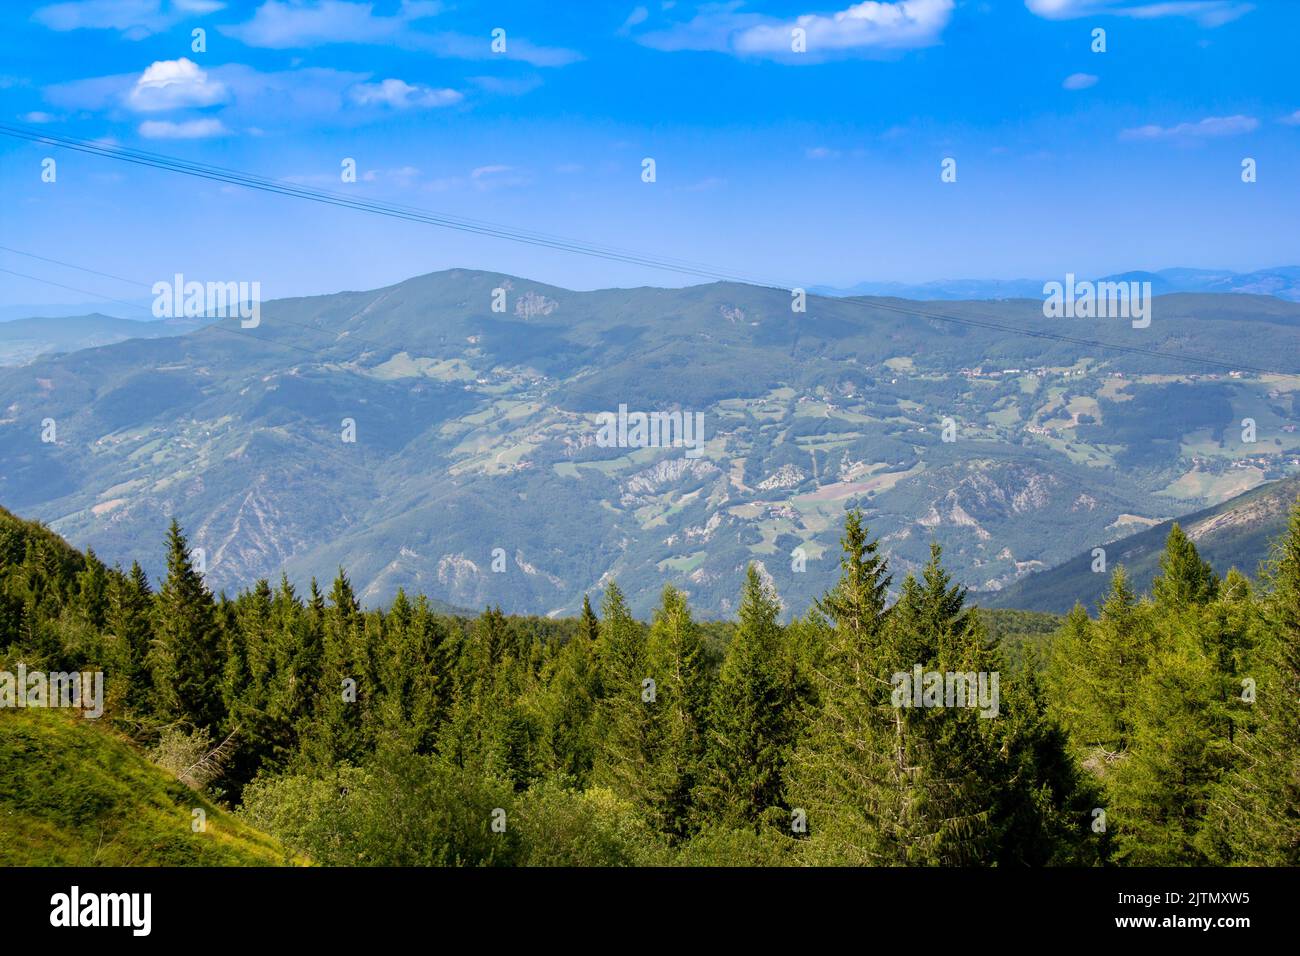 Bella vista panoramica in estate sul Monte Cimone nei pressi del Lago di Ninfa. Paesaggio dell'Appennino Tosco-Emiliano di Sestola, provincia di Modena, Italia Foto Stock